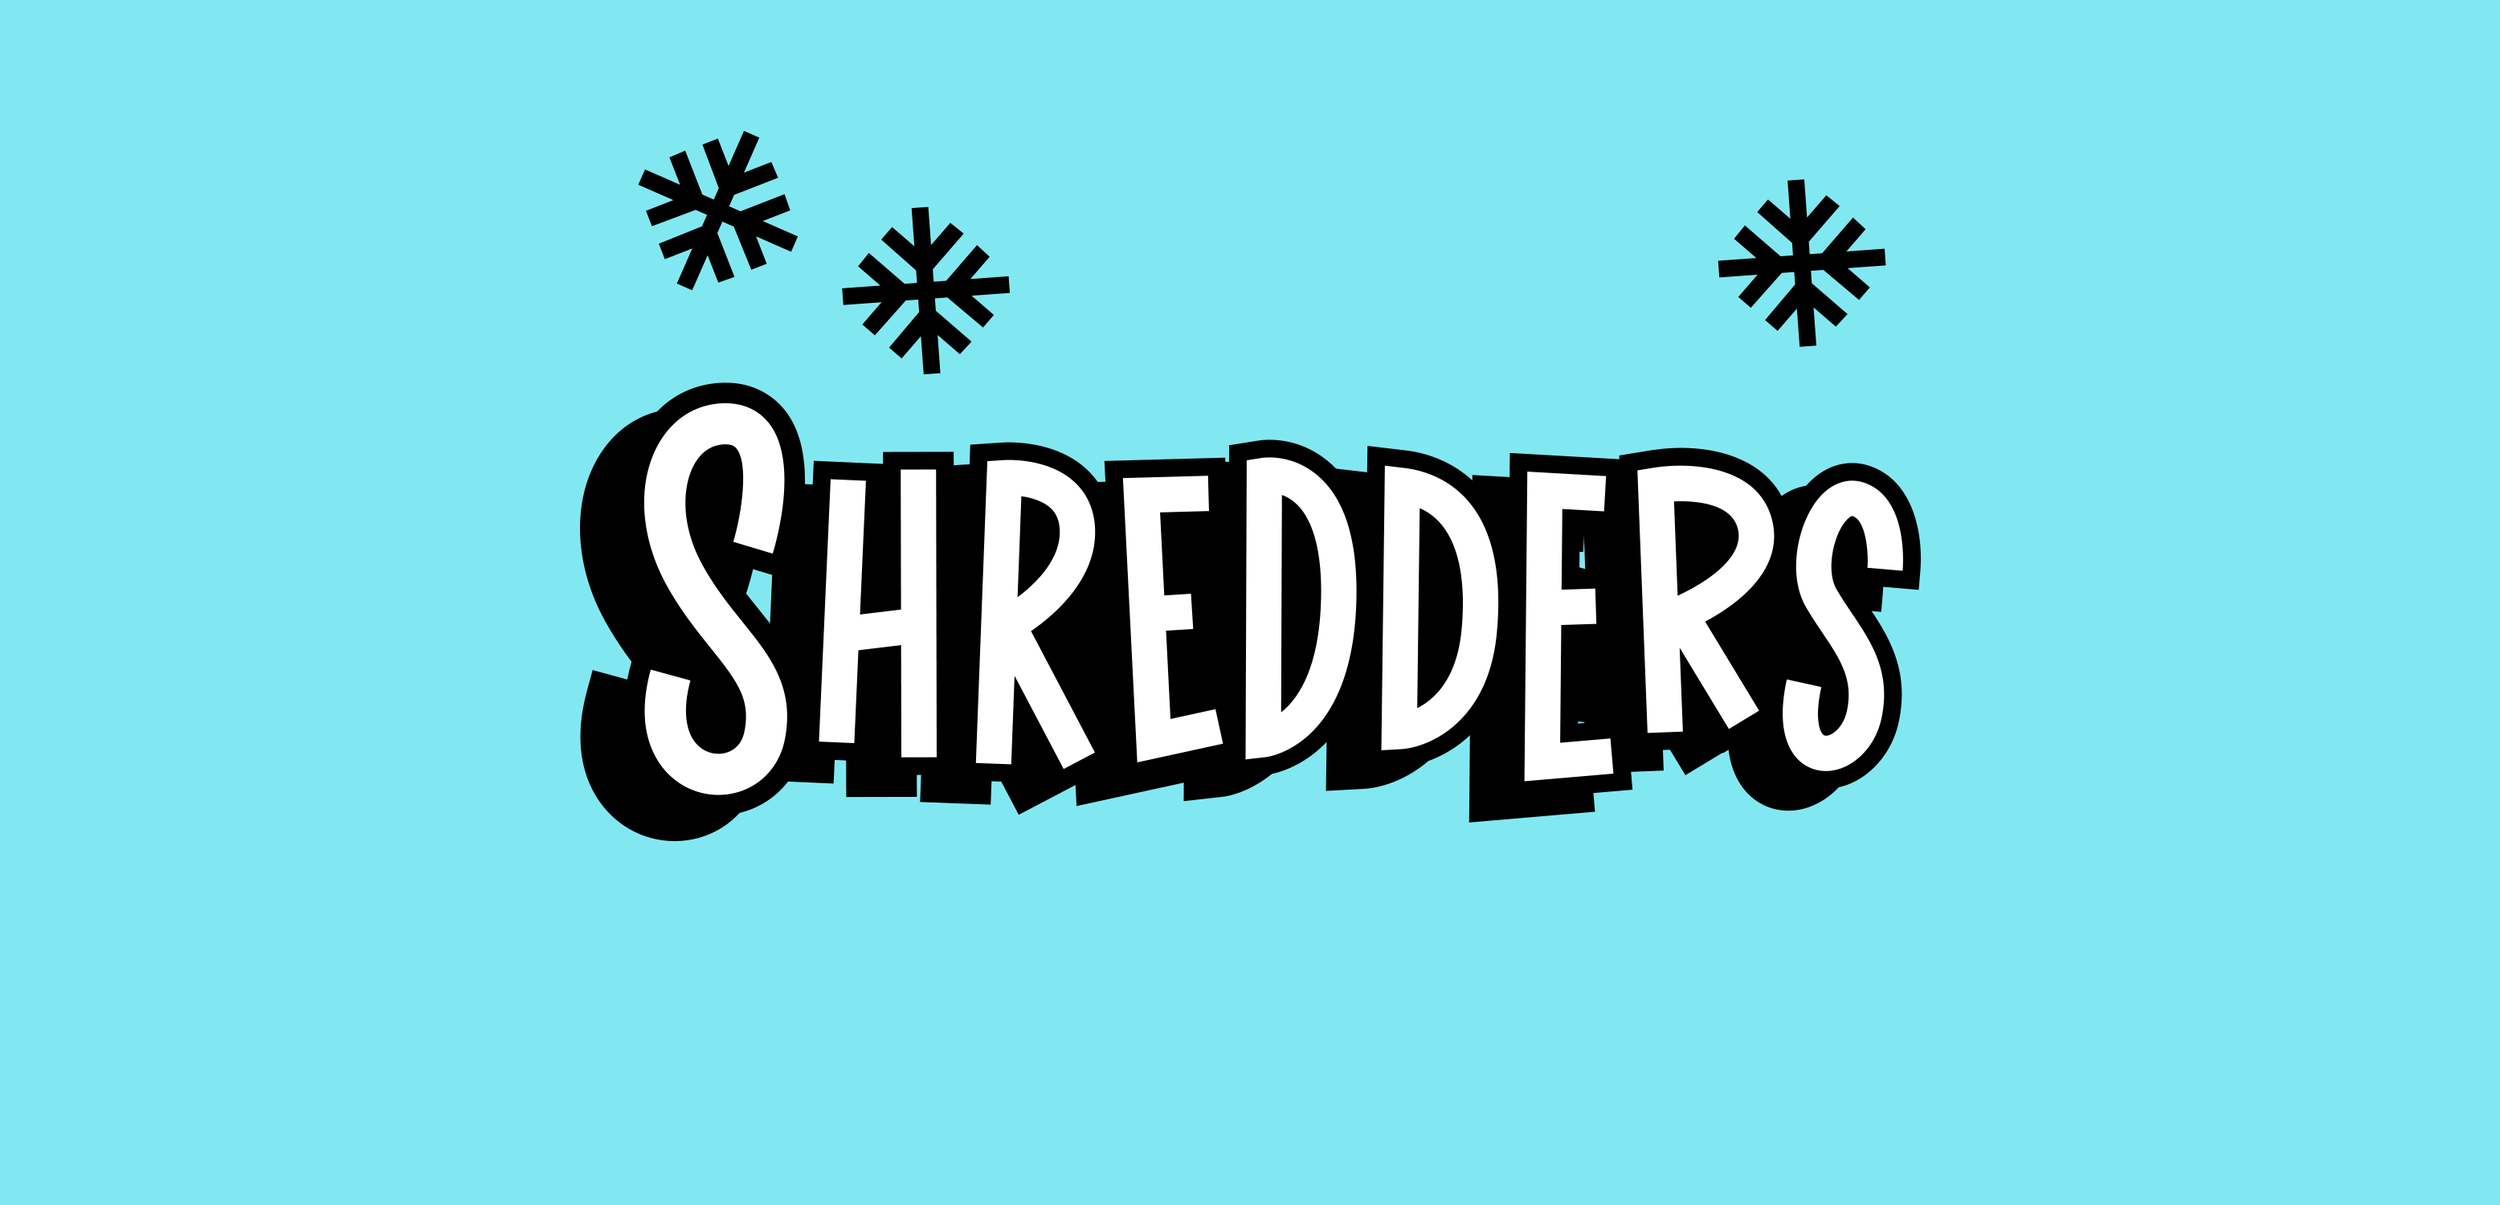 MTV-shredders-logo-long-v7.png